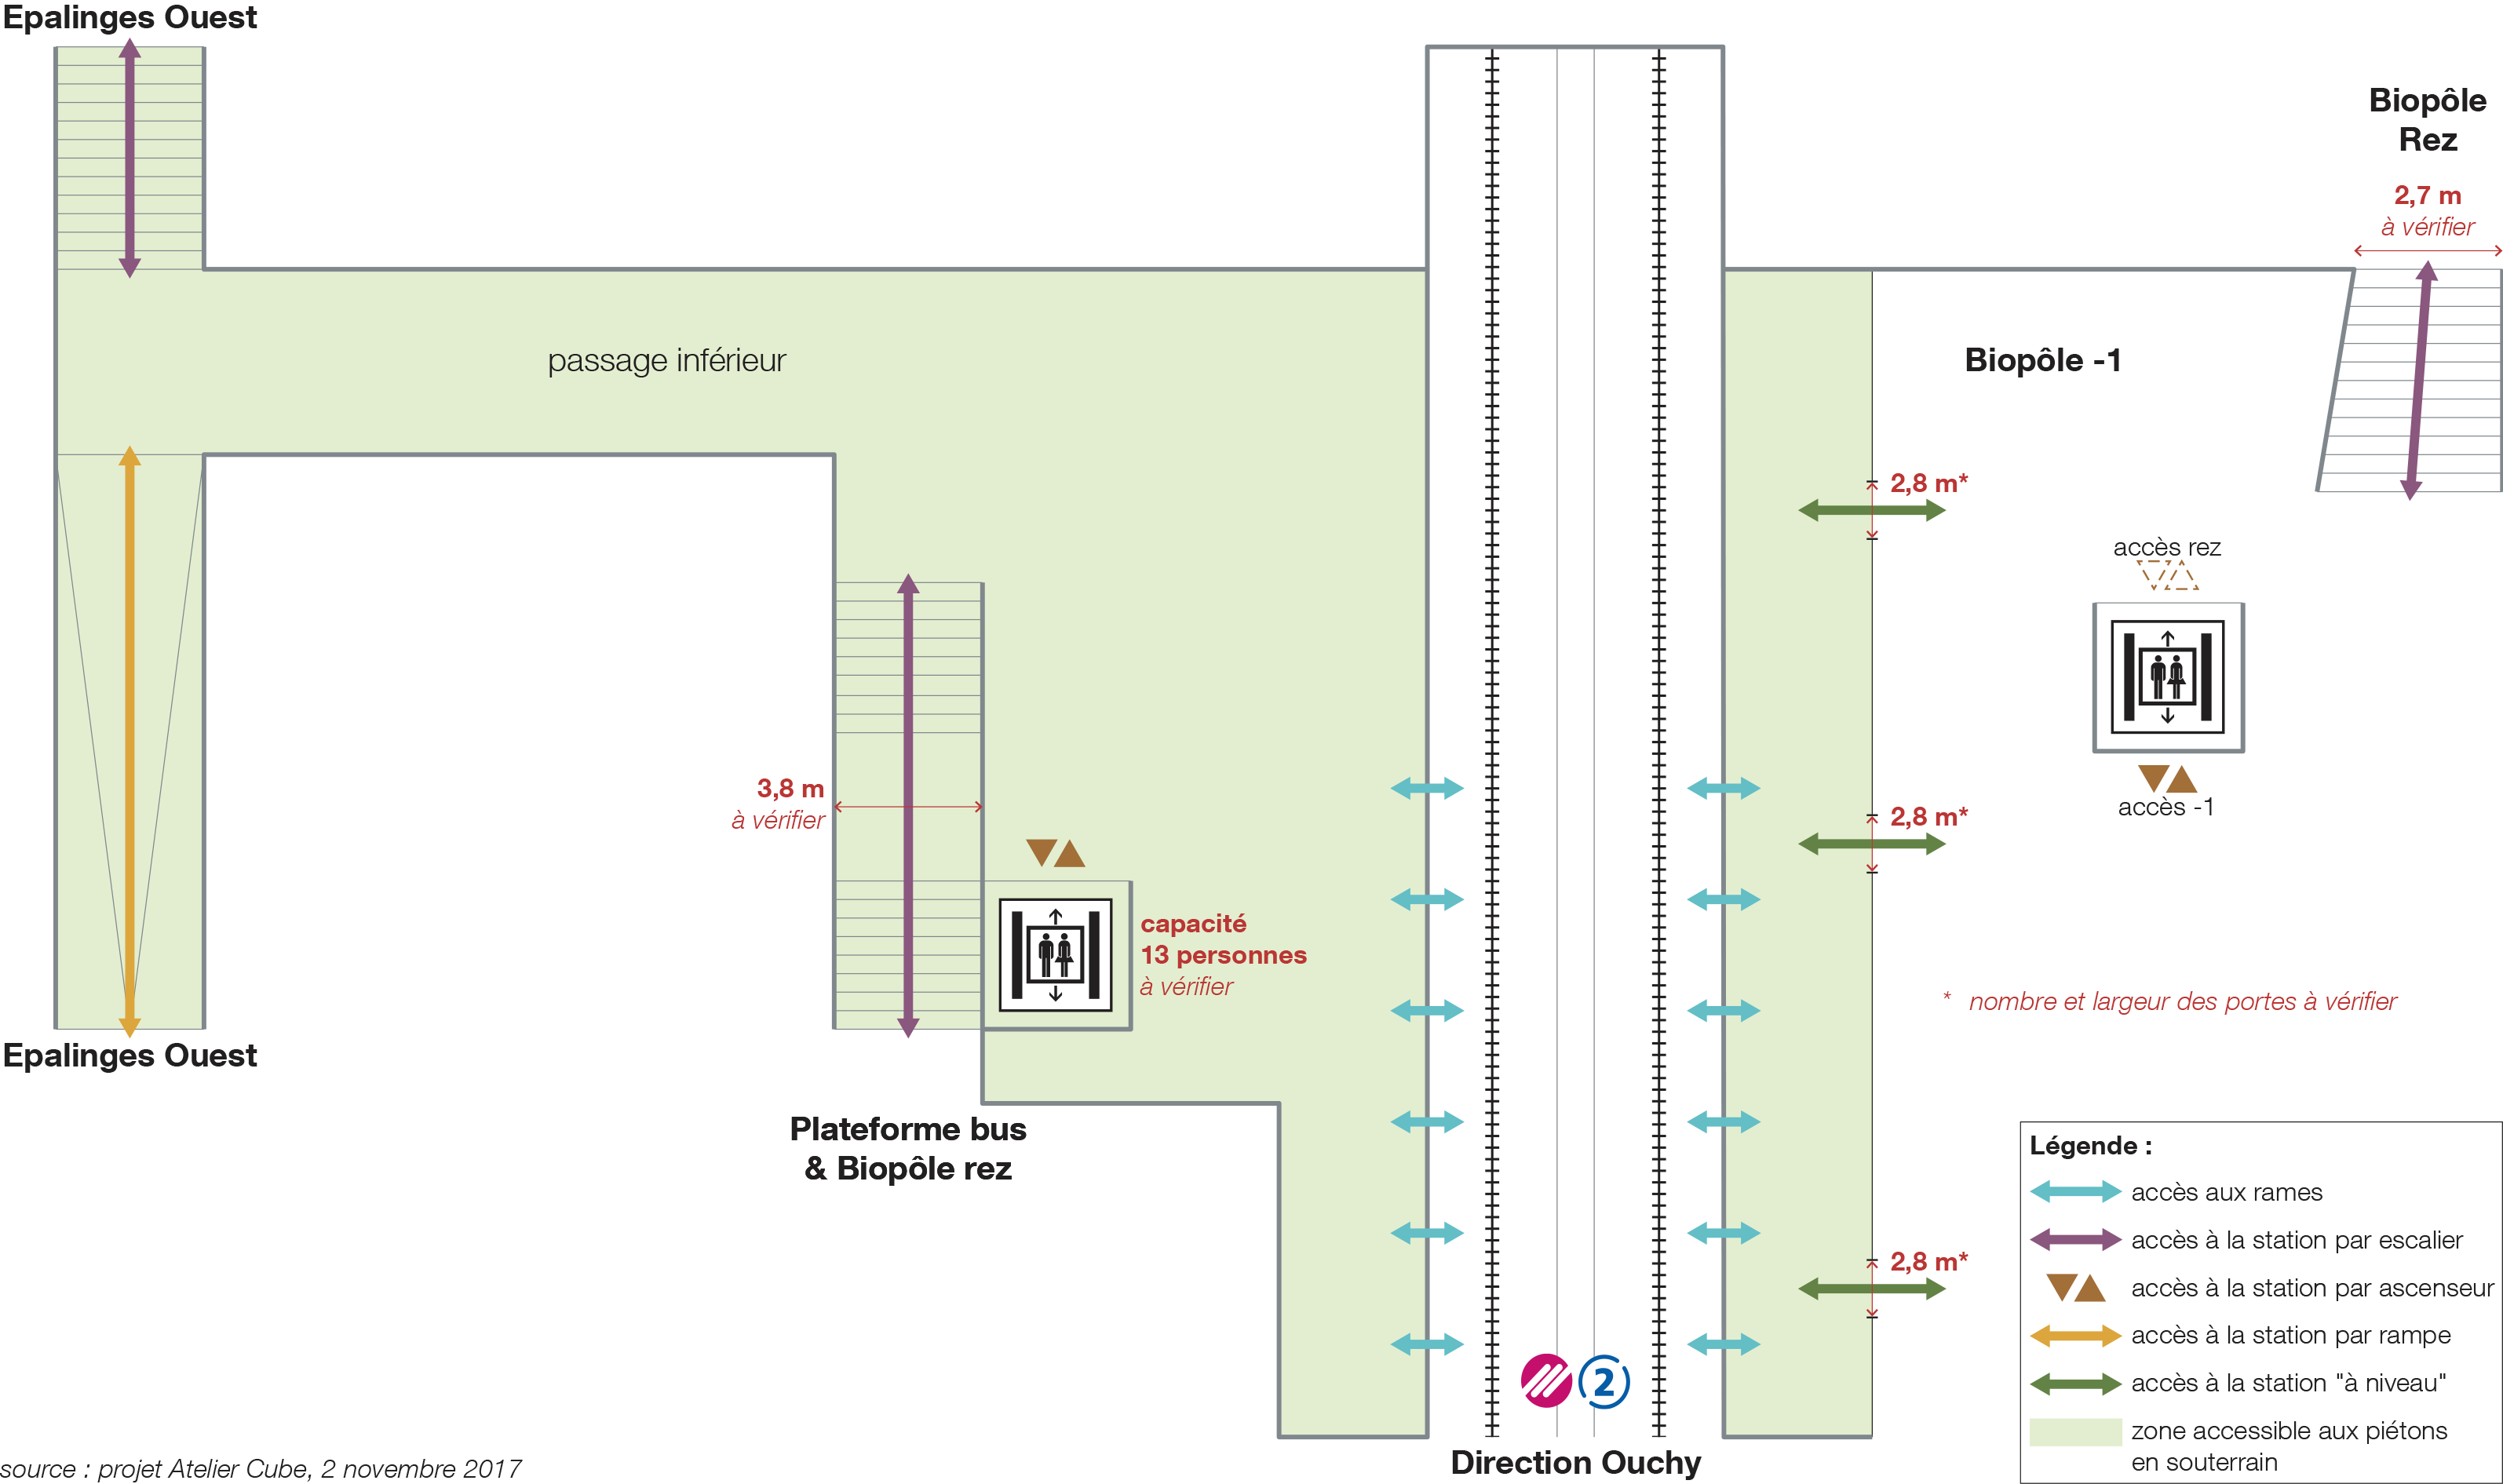 Réorganisation de la station m2 Croisettes – Etude des flux piétonniers